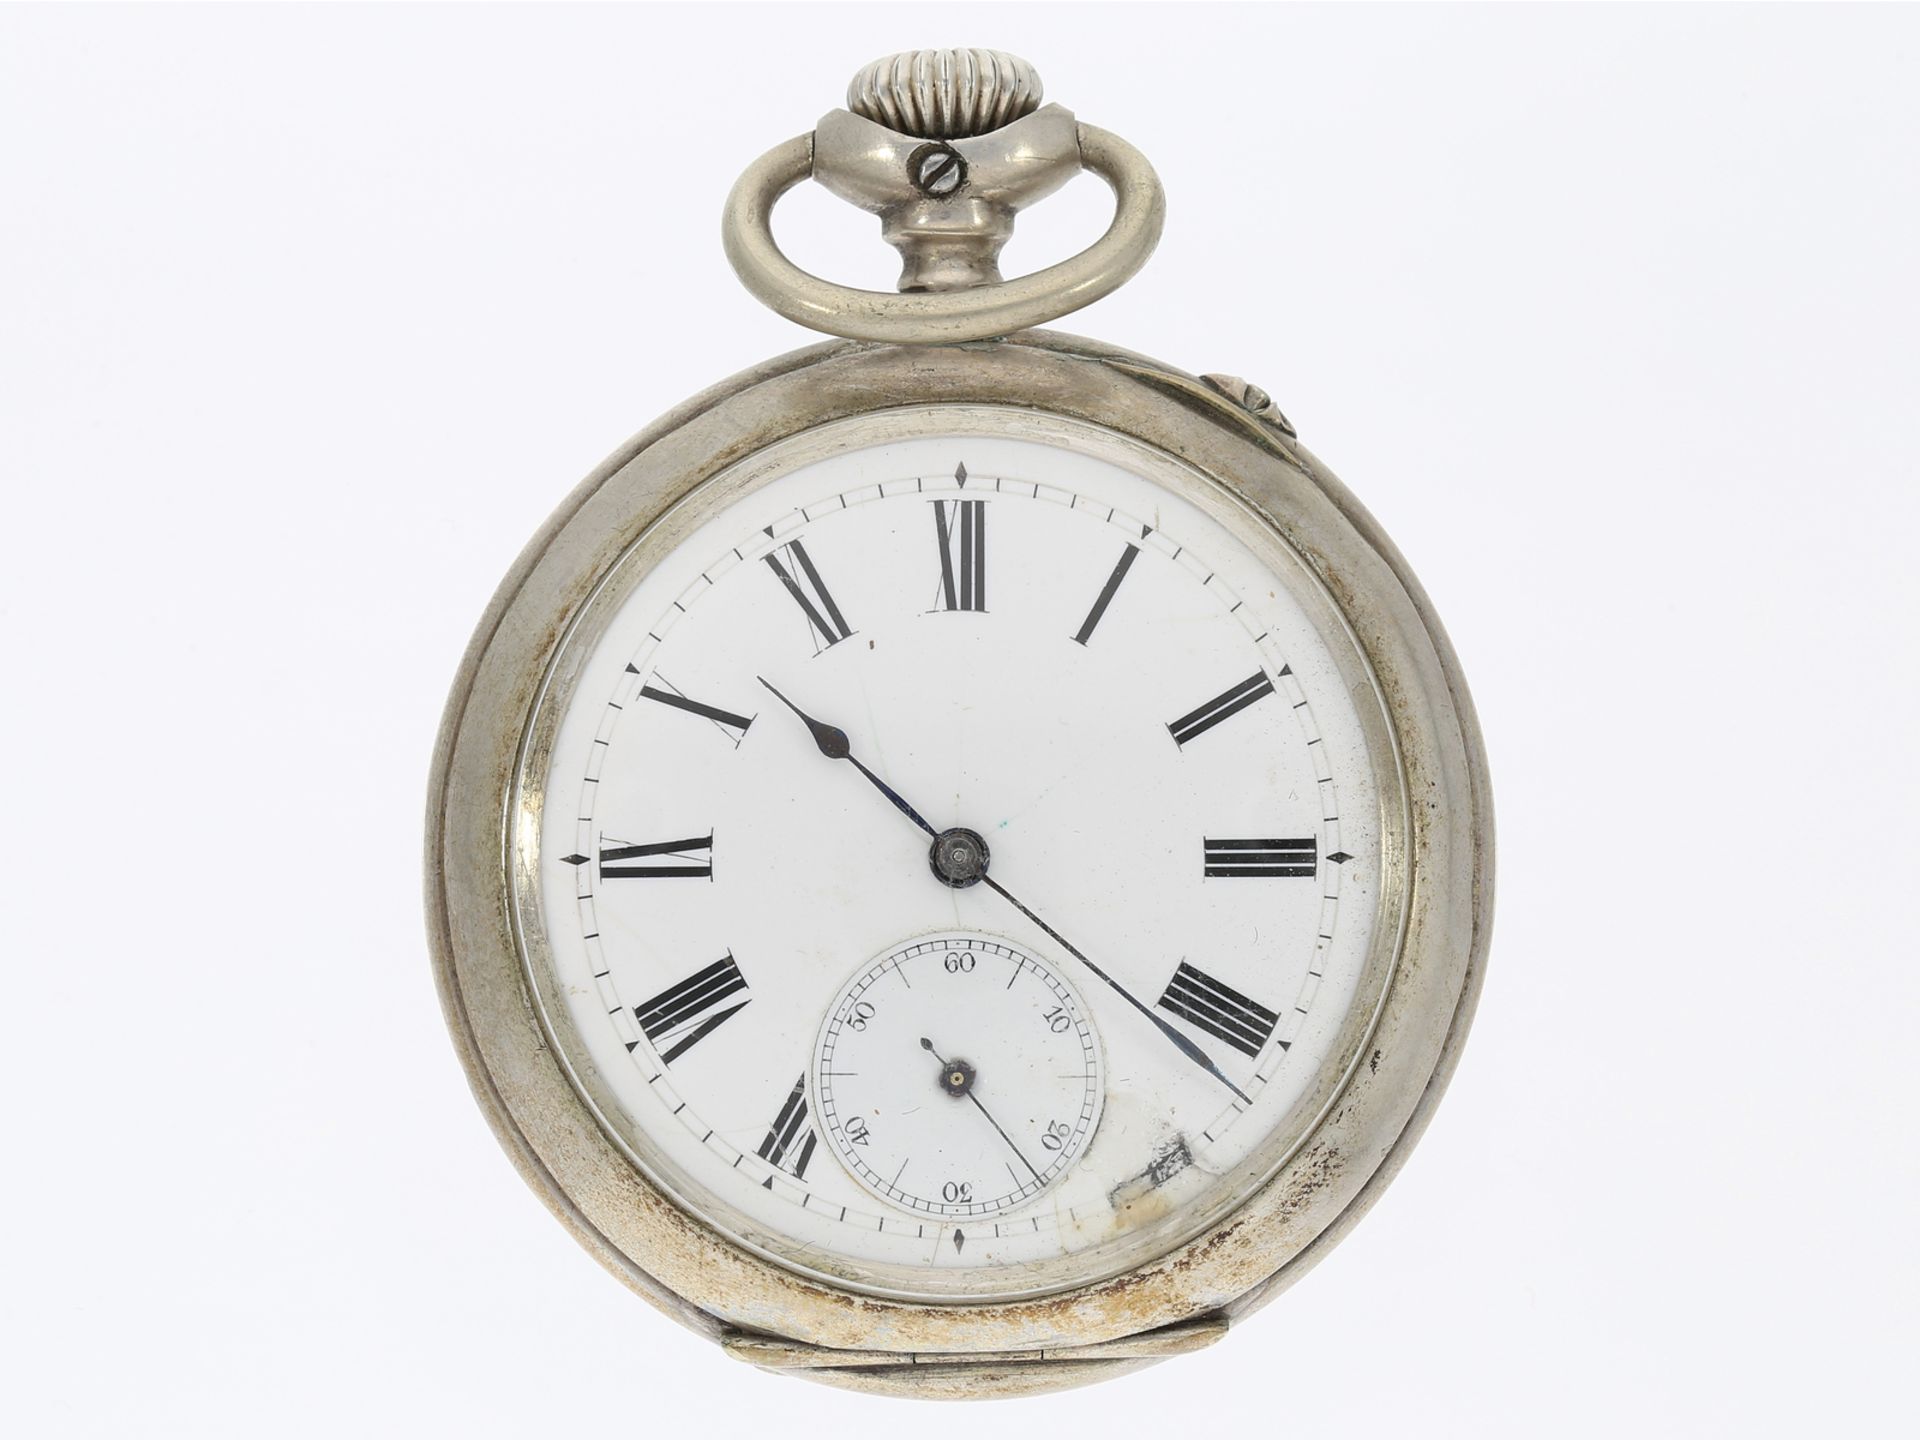 Taschenuhr: kaiserliche Präsent-Uhr mit originaler Schatulle, Gebrüder Eppner Berlin 1890